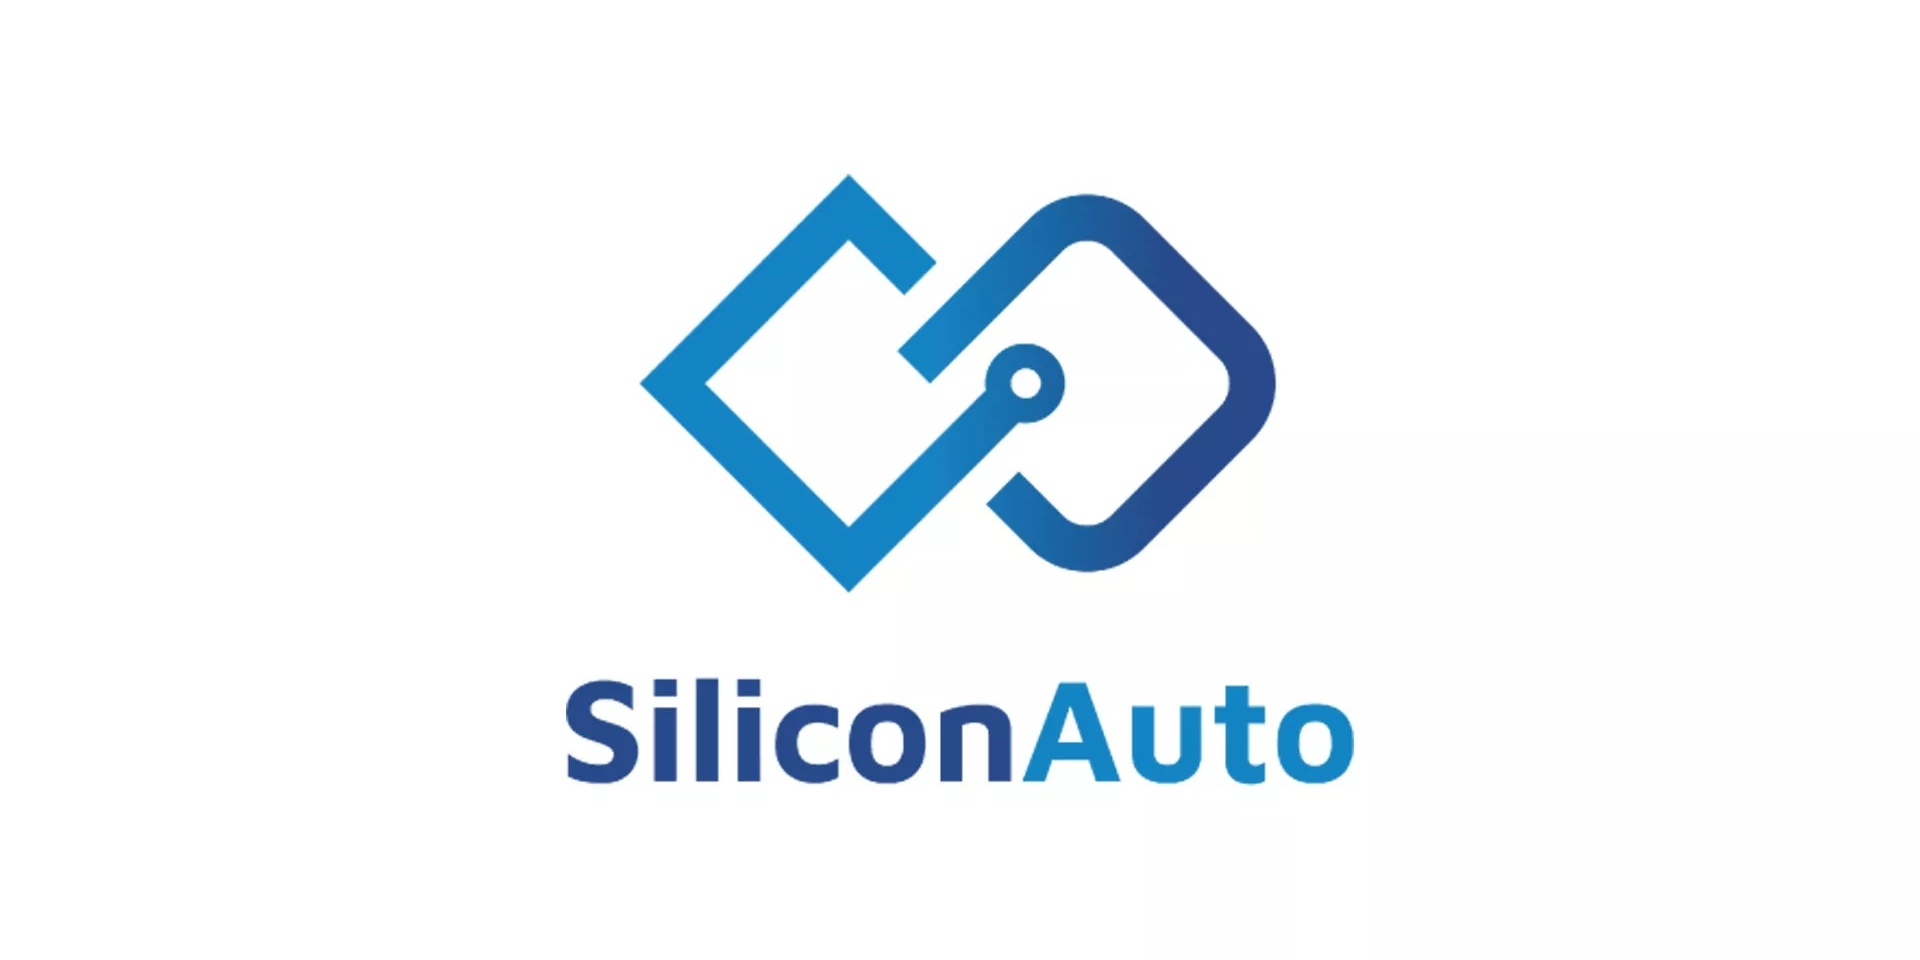 Stellantis與鴻海合作打造車用晶片　SiliconAuto將成為車輛核心